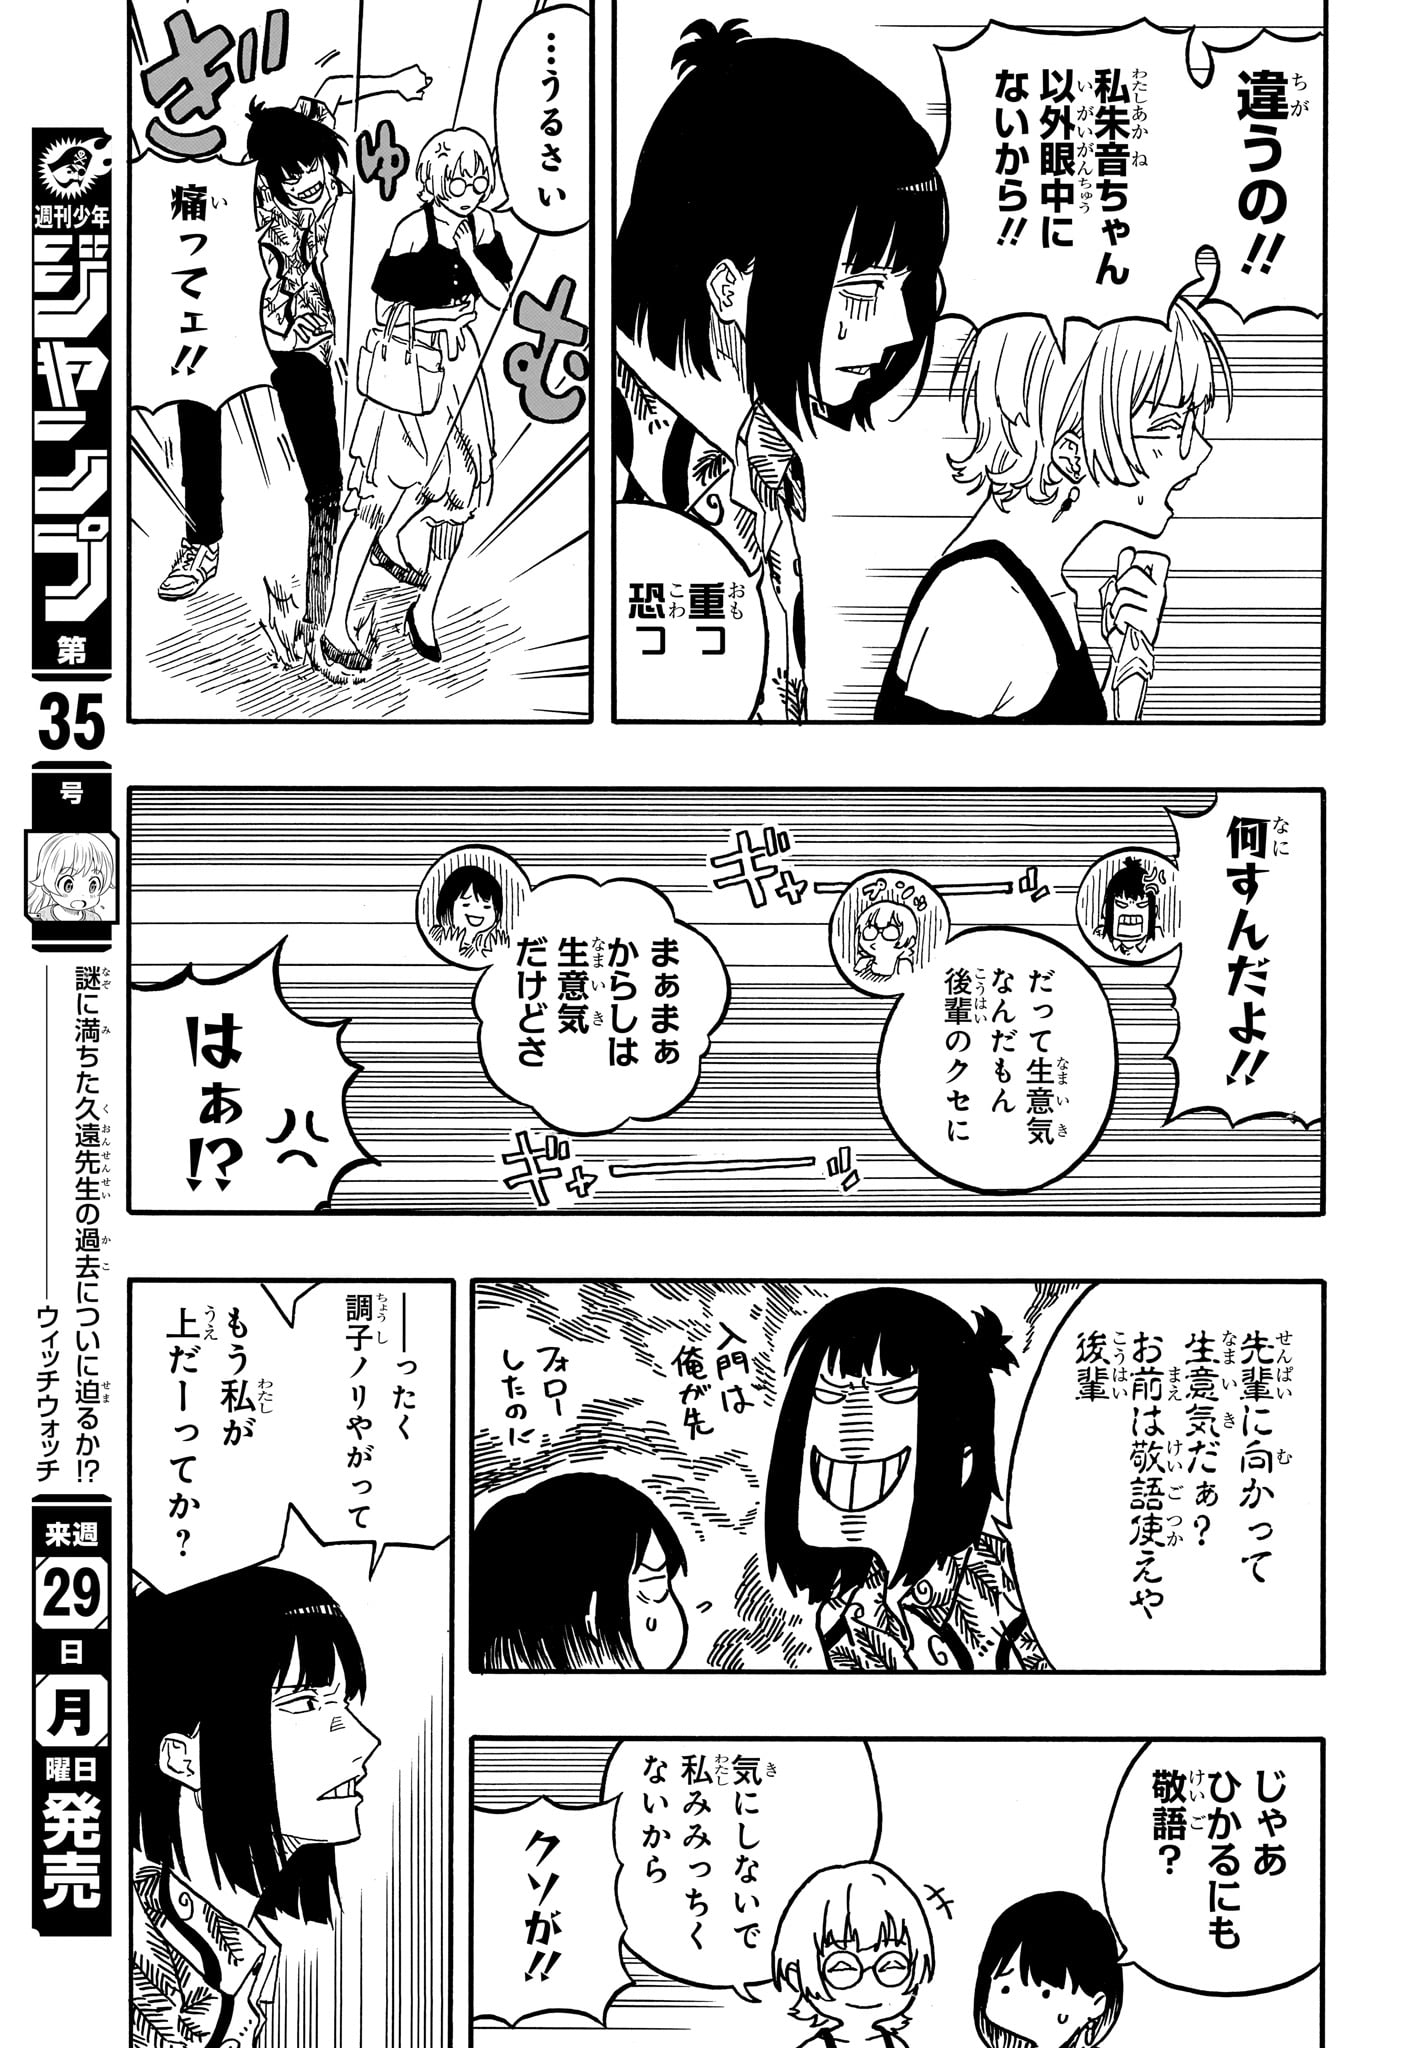 Akane-Banashi - Chapter 119 - Page 15